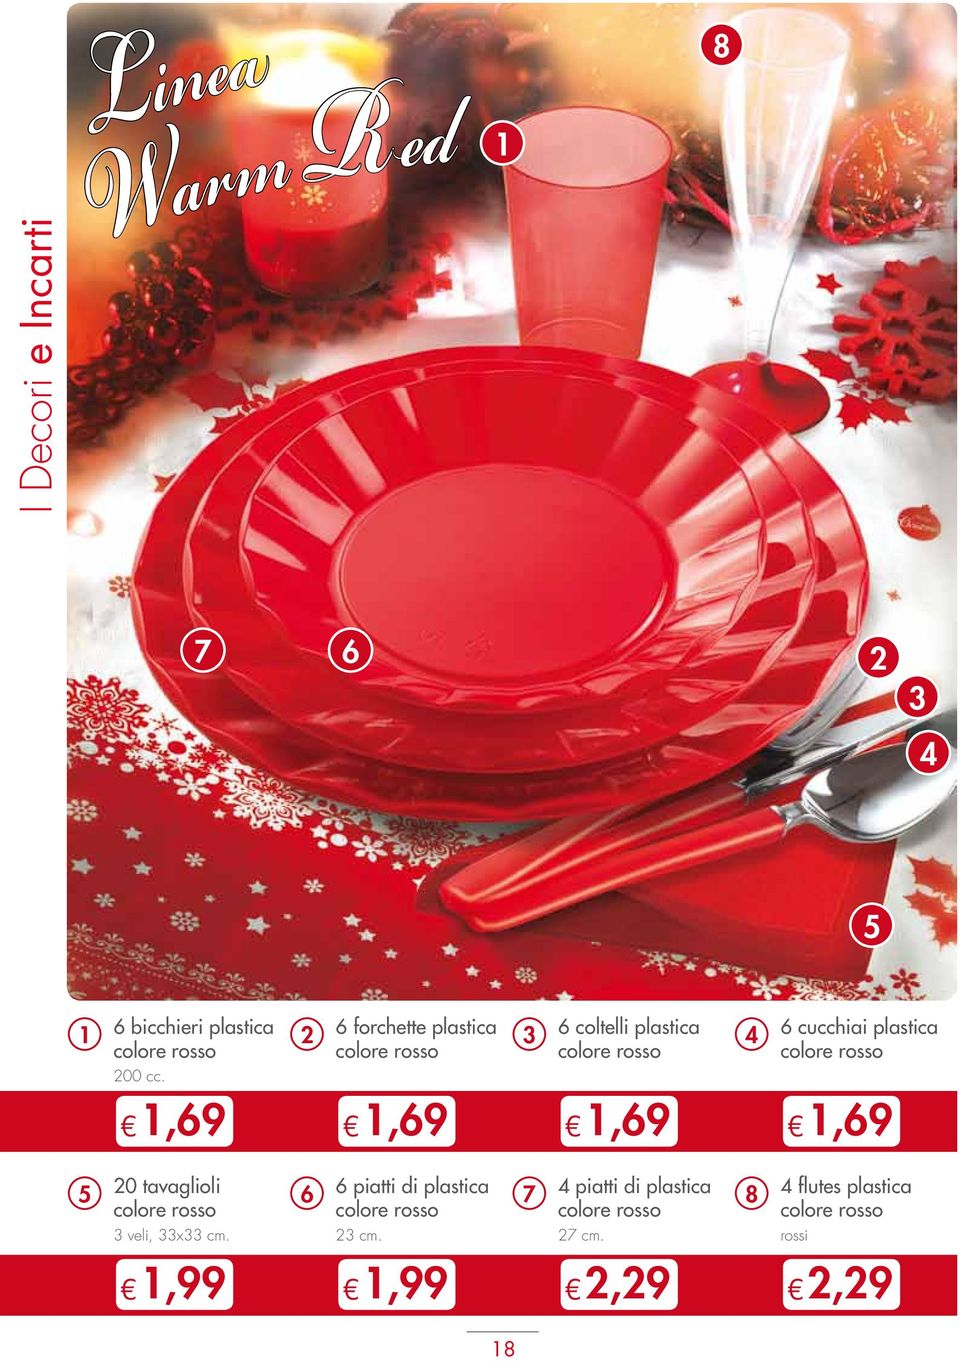 plastica colore rosso 1,69 5 20 tavaglioli colore rosso 3 veli, 33x33 cm.